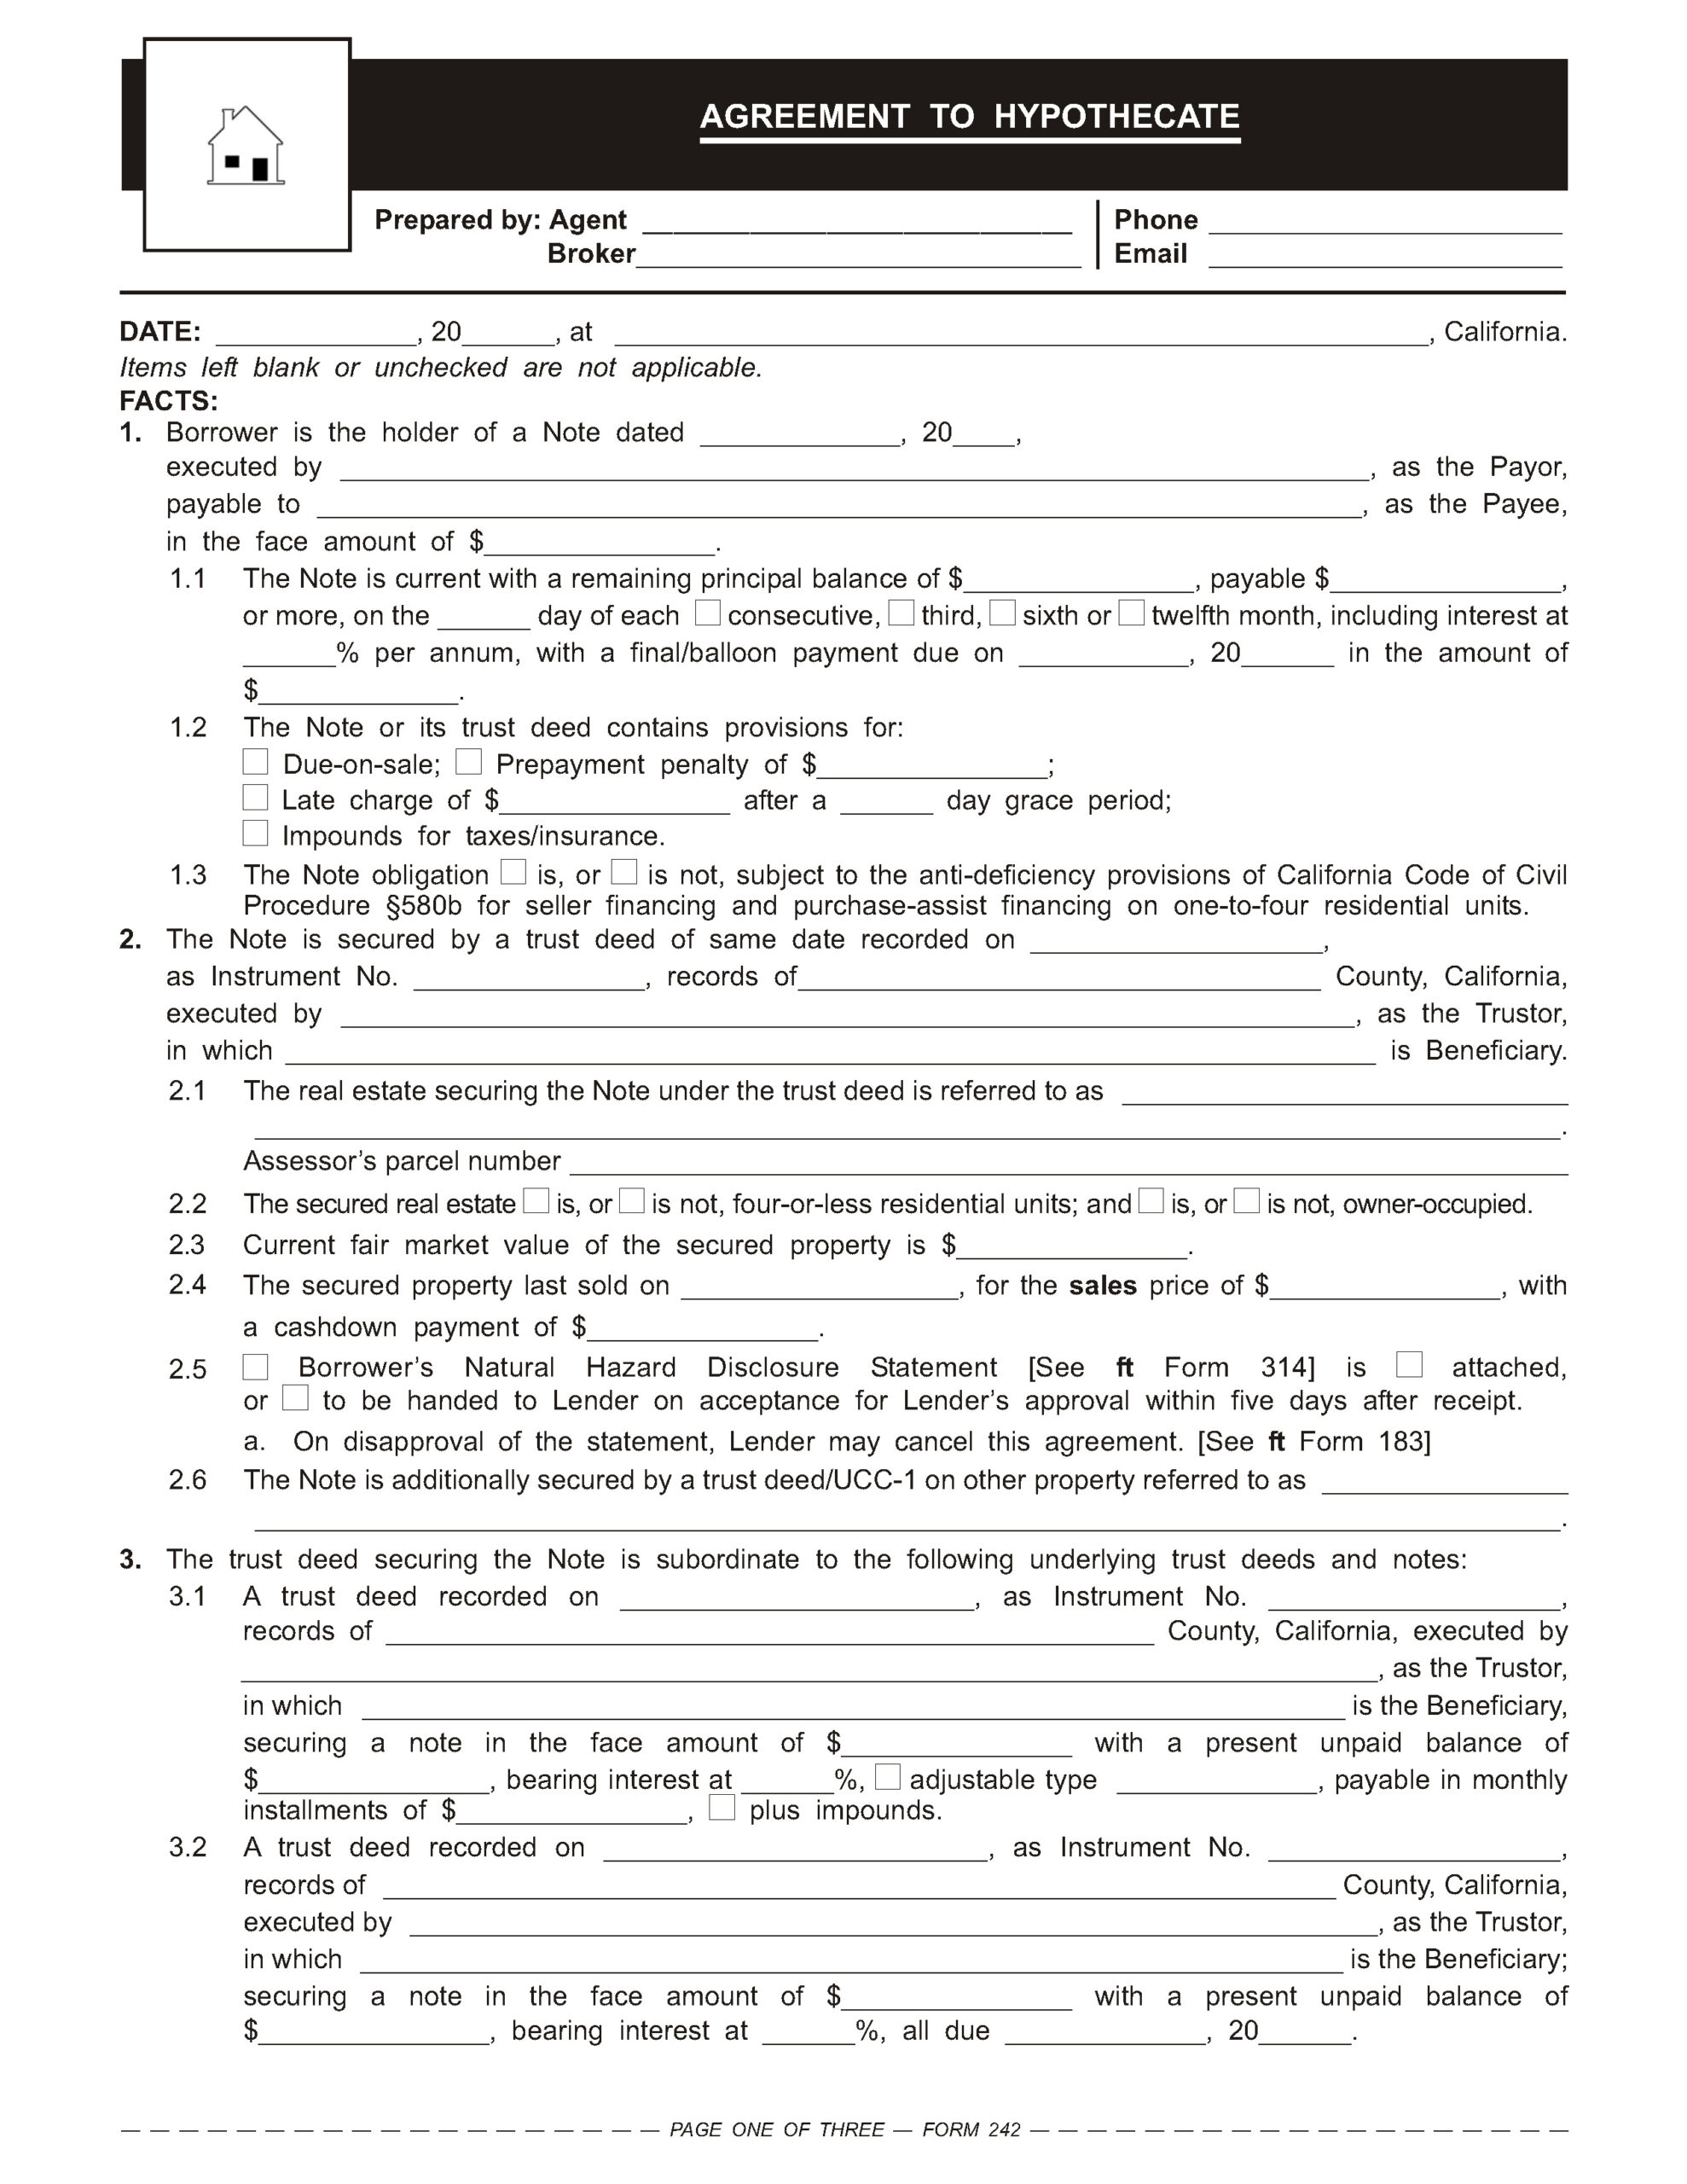 RPI Form 242